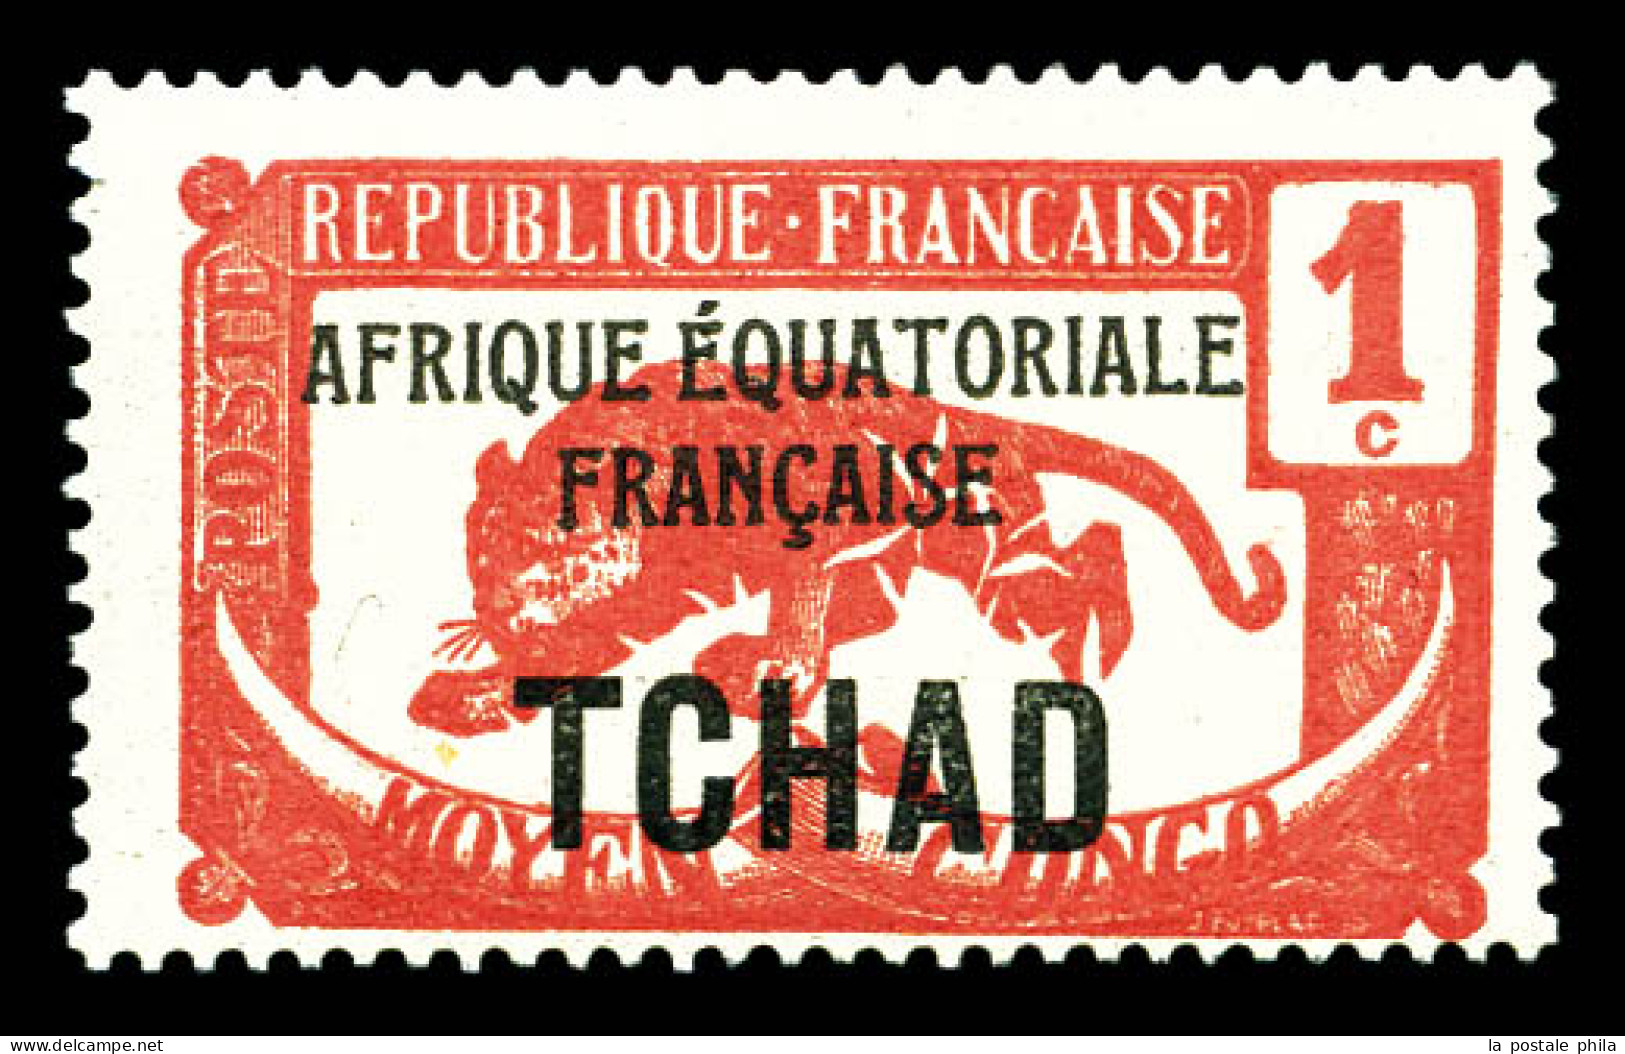 * N°19c, 1c Rouge: Sans Teinte De Fond. SUP  Qualité: *  Cote: 390 Euros - Unused Stamps